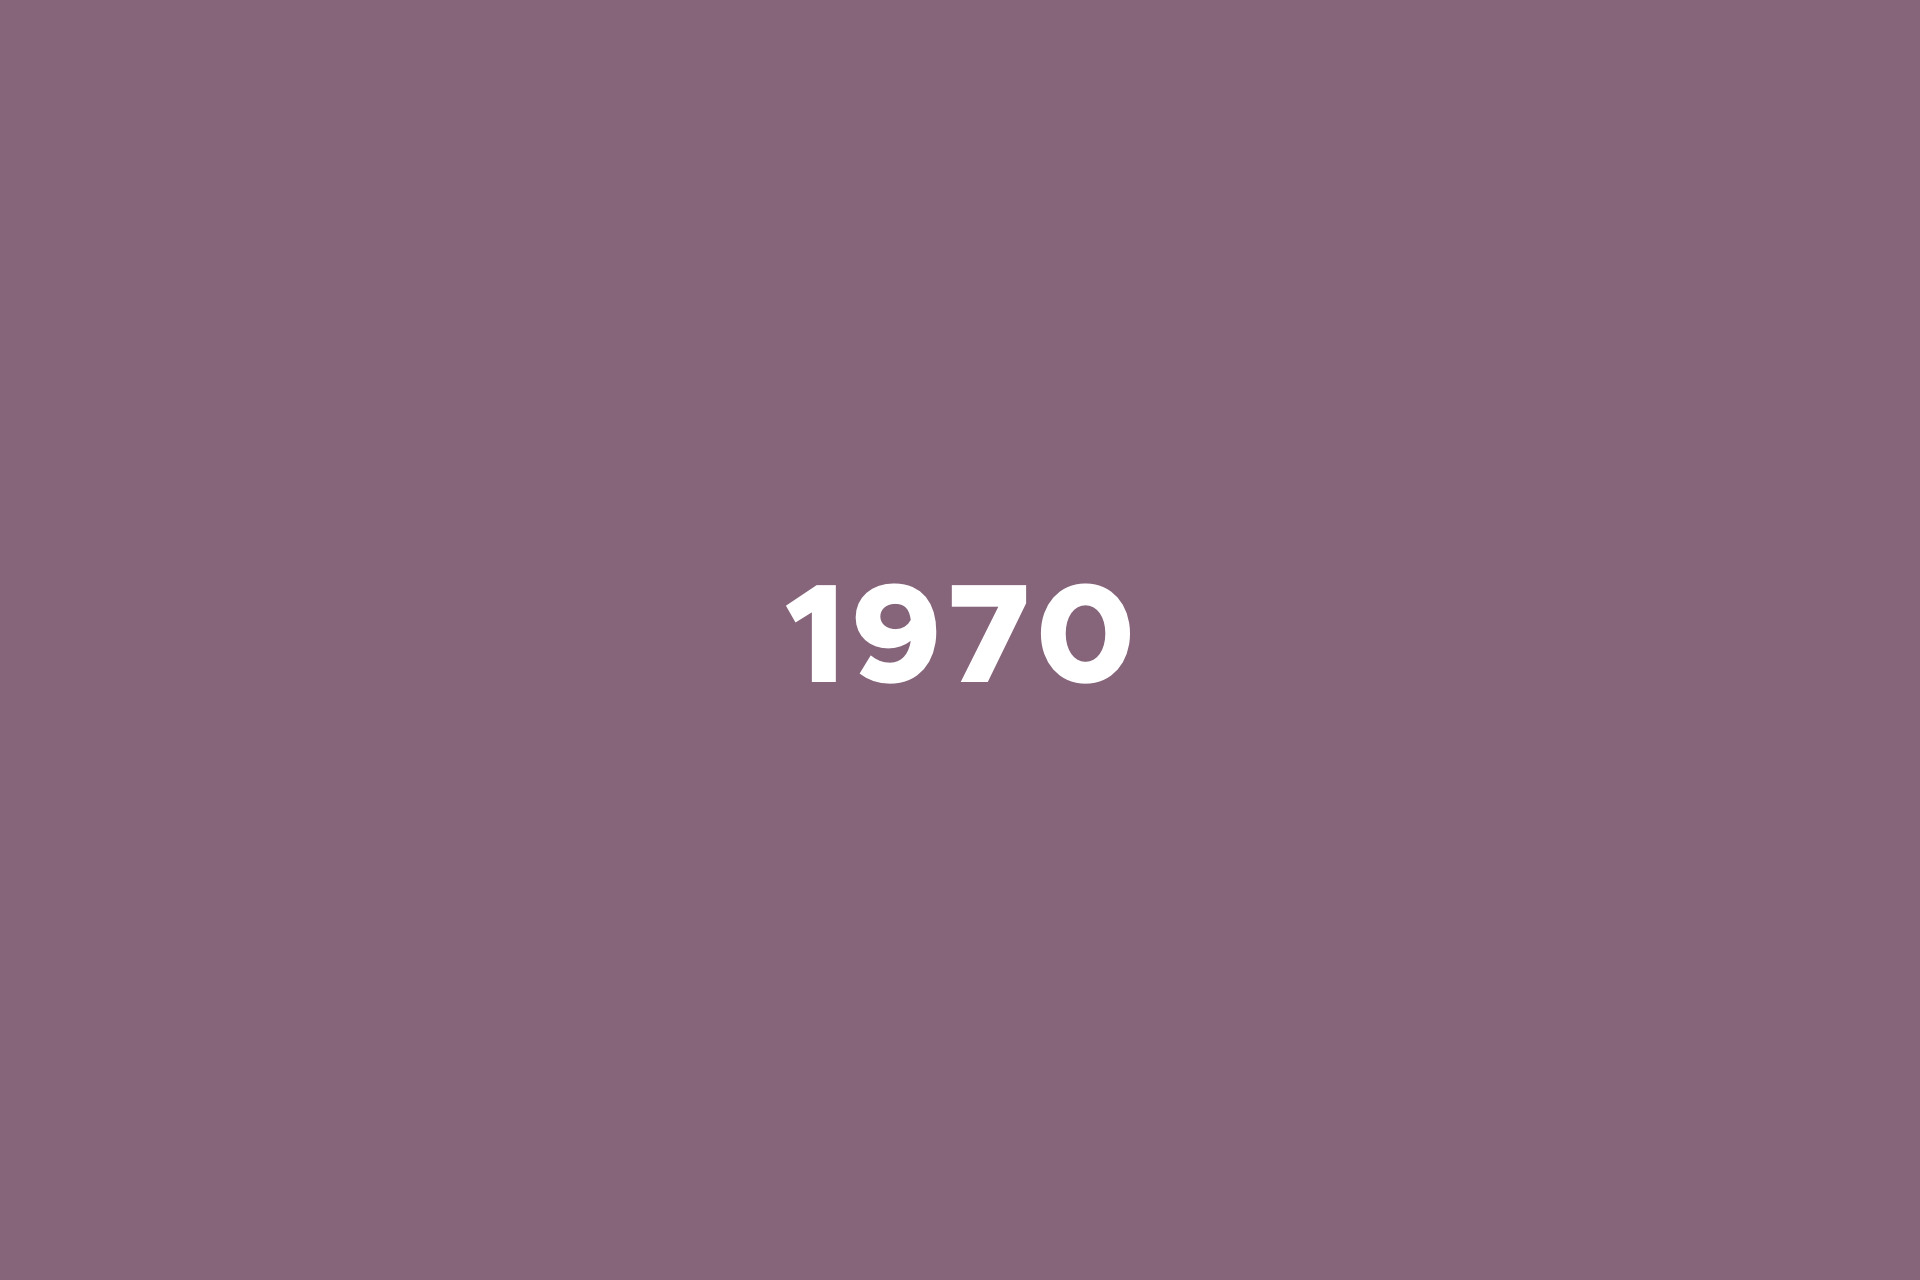 År 1970 på skilt